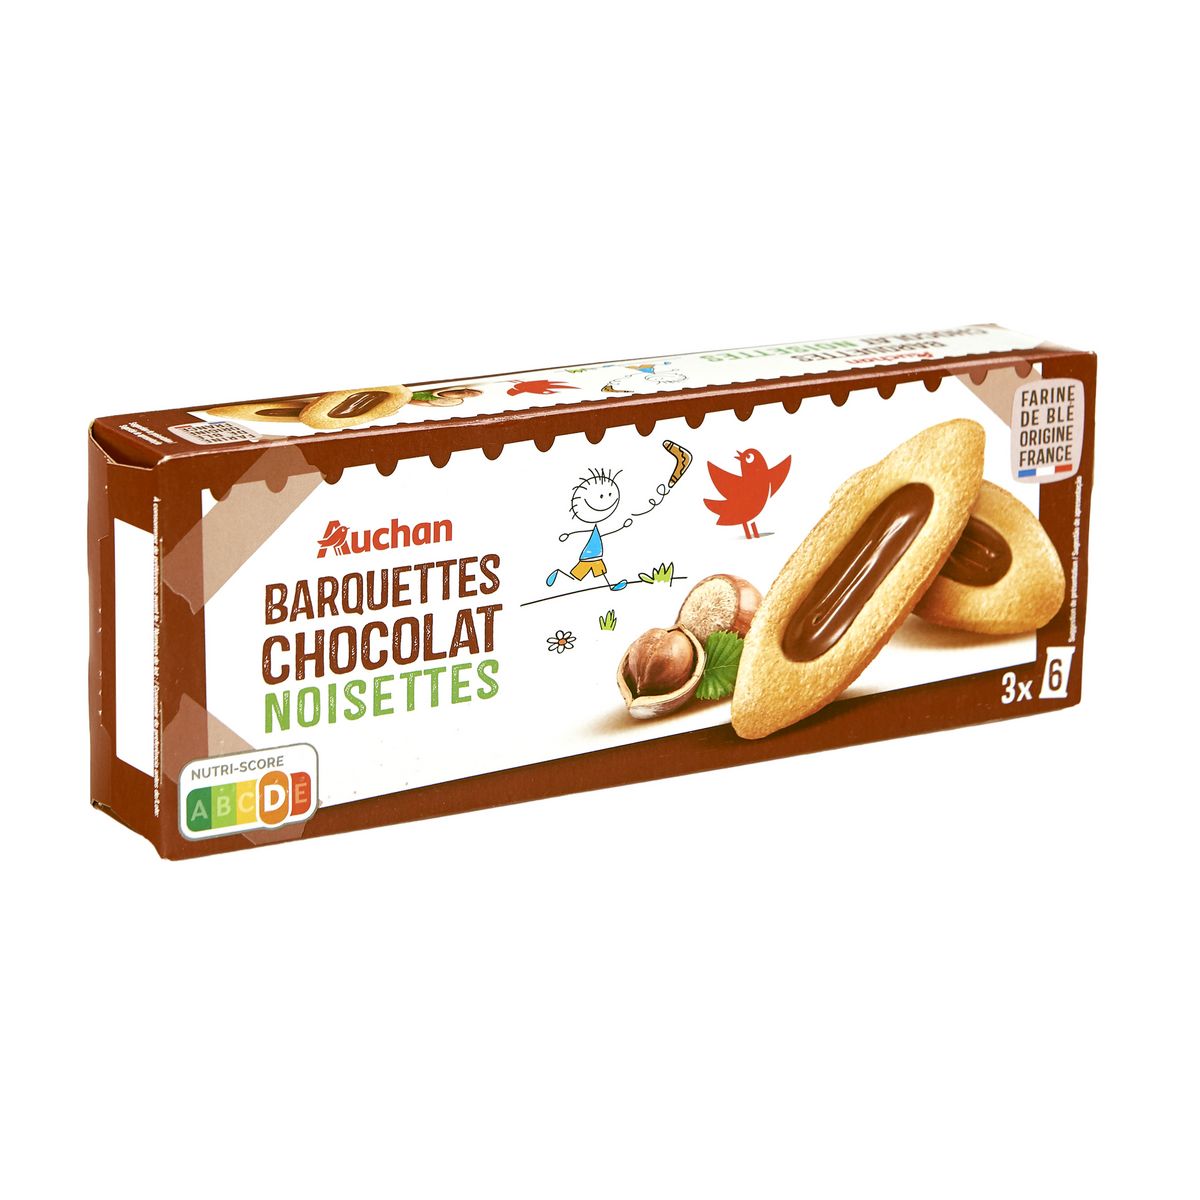 AUCHAN Barquettes chocolat-noisettes, sachets fraîcheur 3x6 biscuits 120g